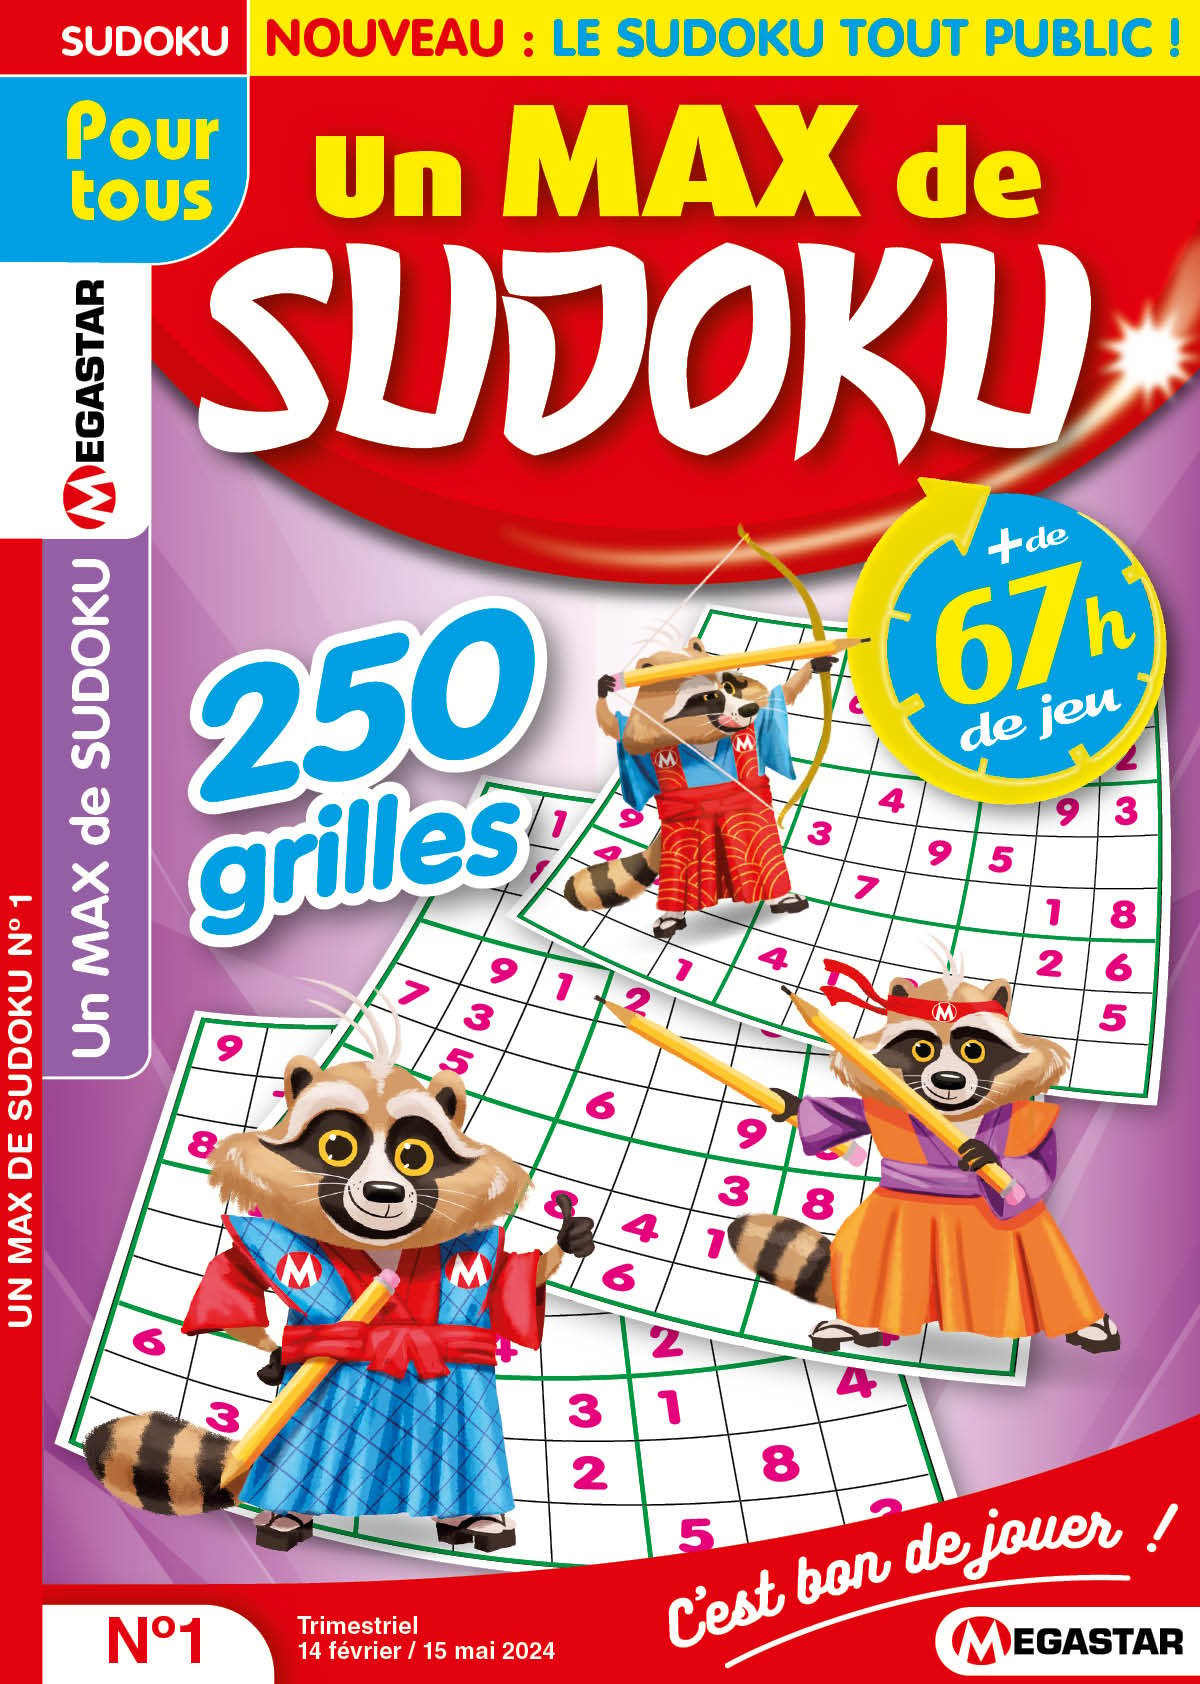 Un max de sudoku Numéro 1